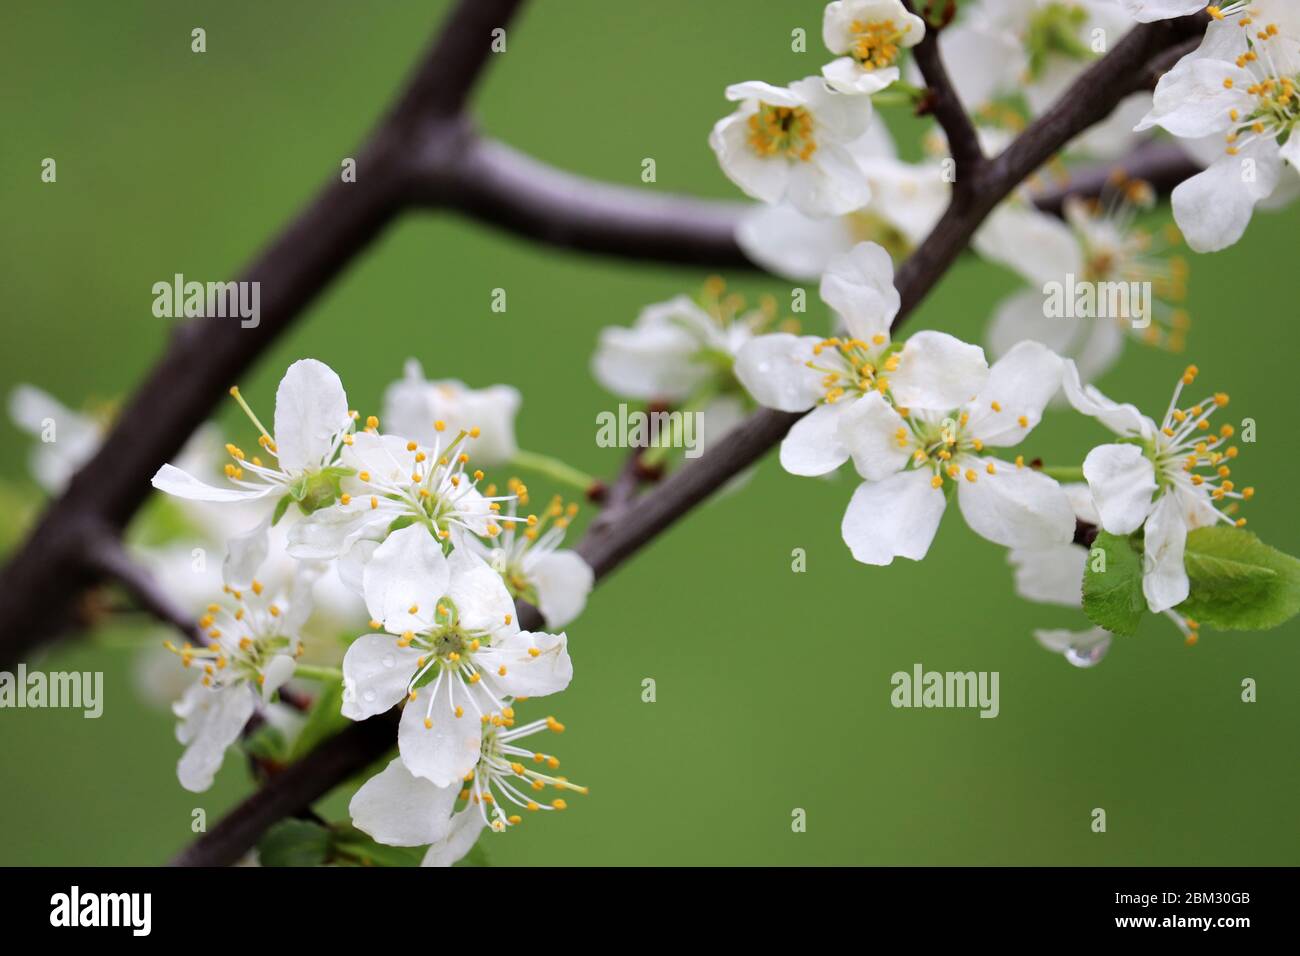 Fleur de cerisier au printemps sur fond vert naturel. Fleurs blanches sur une branche dans un jardin après la pluie, couleurs douces Banque D'Images